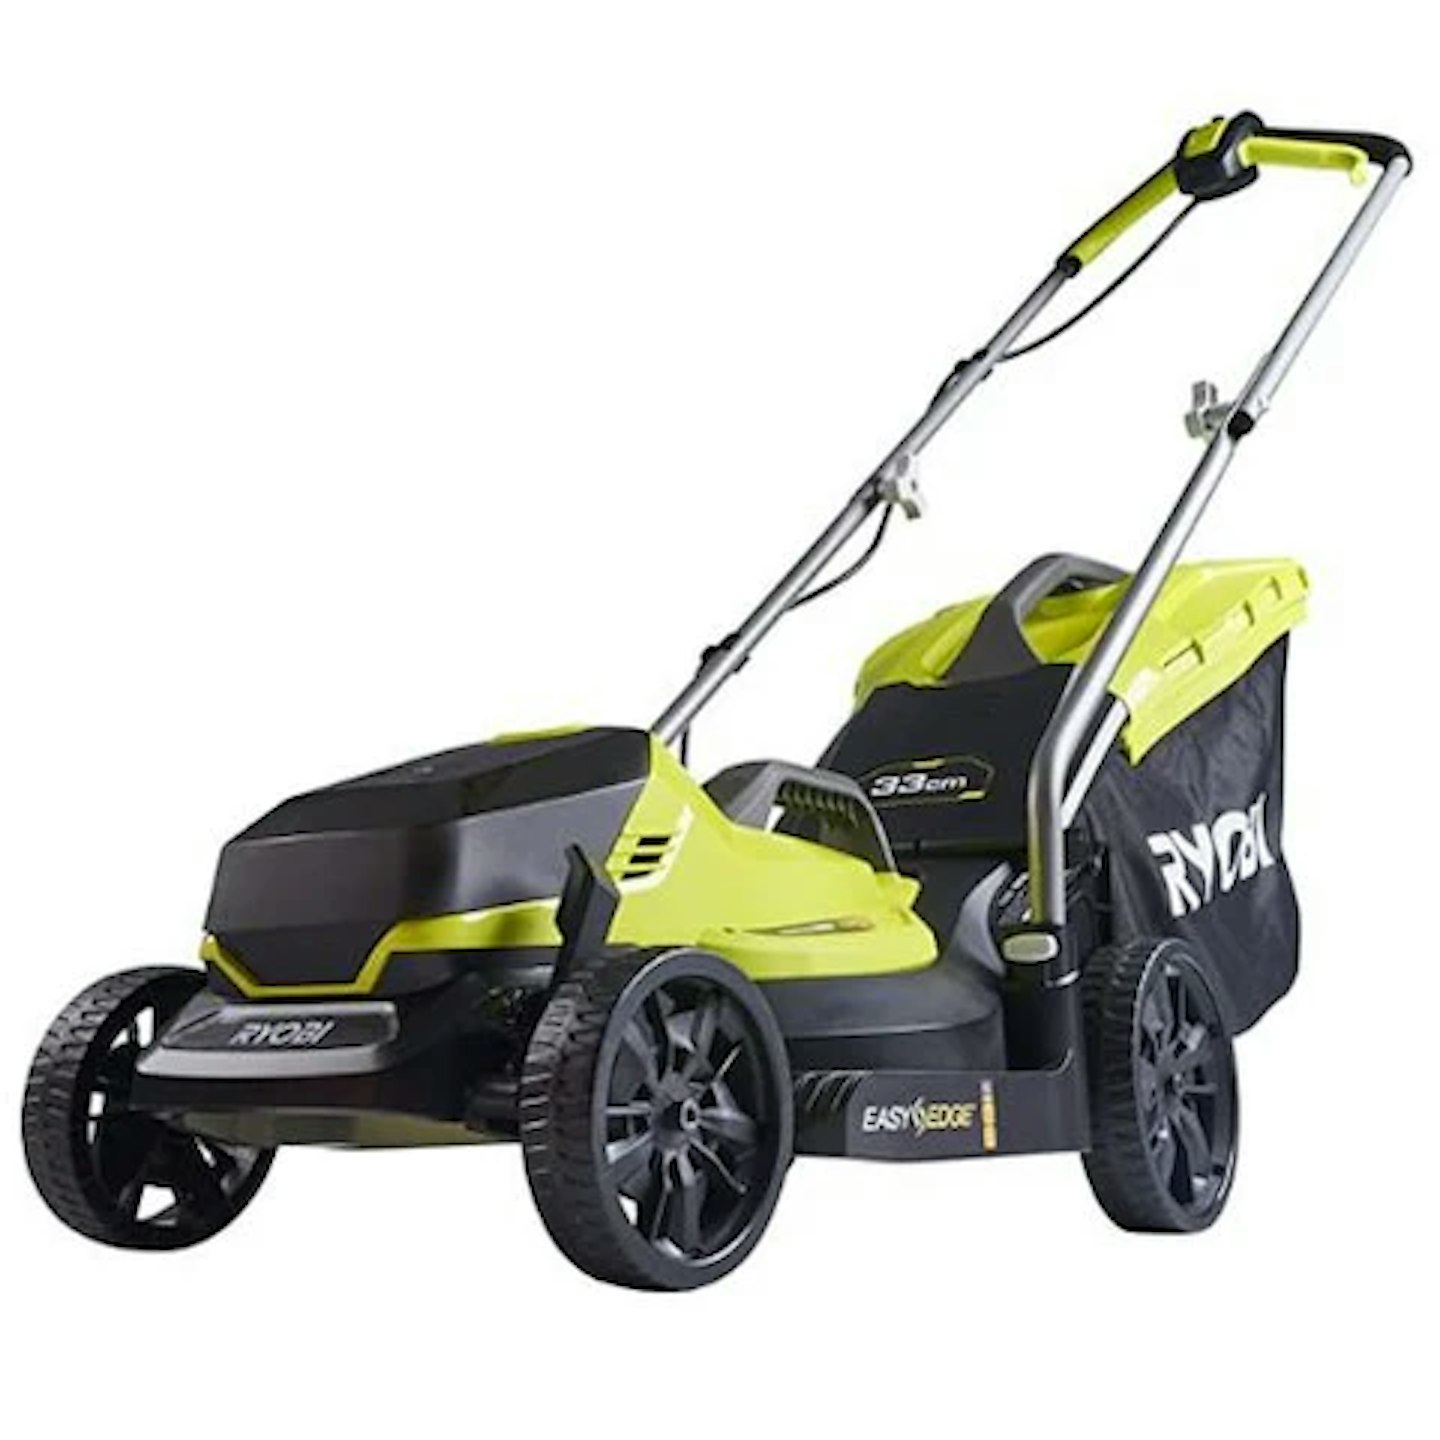 Ryobi OLM1833B 18V ONE+ Cordless Lawn Mower